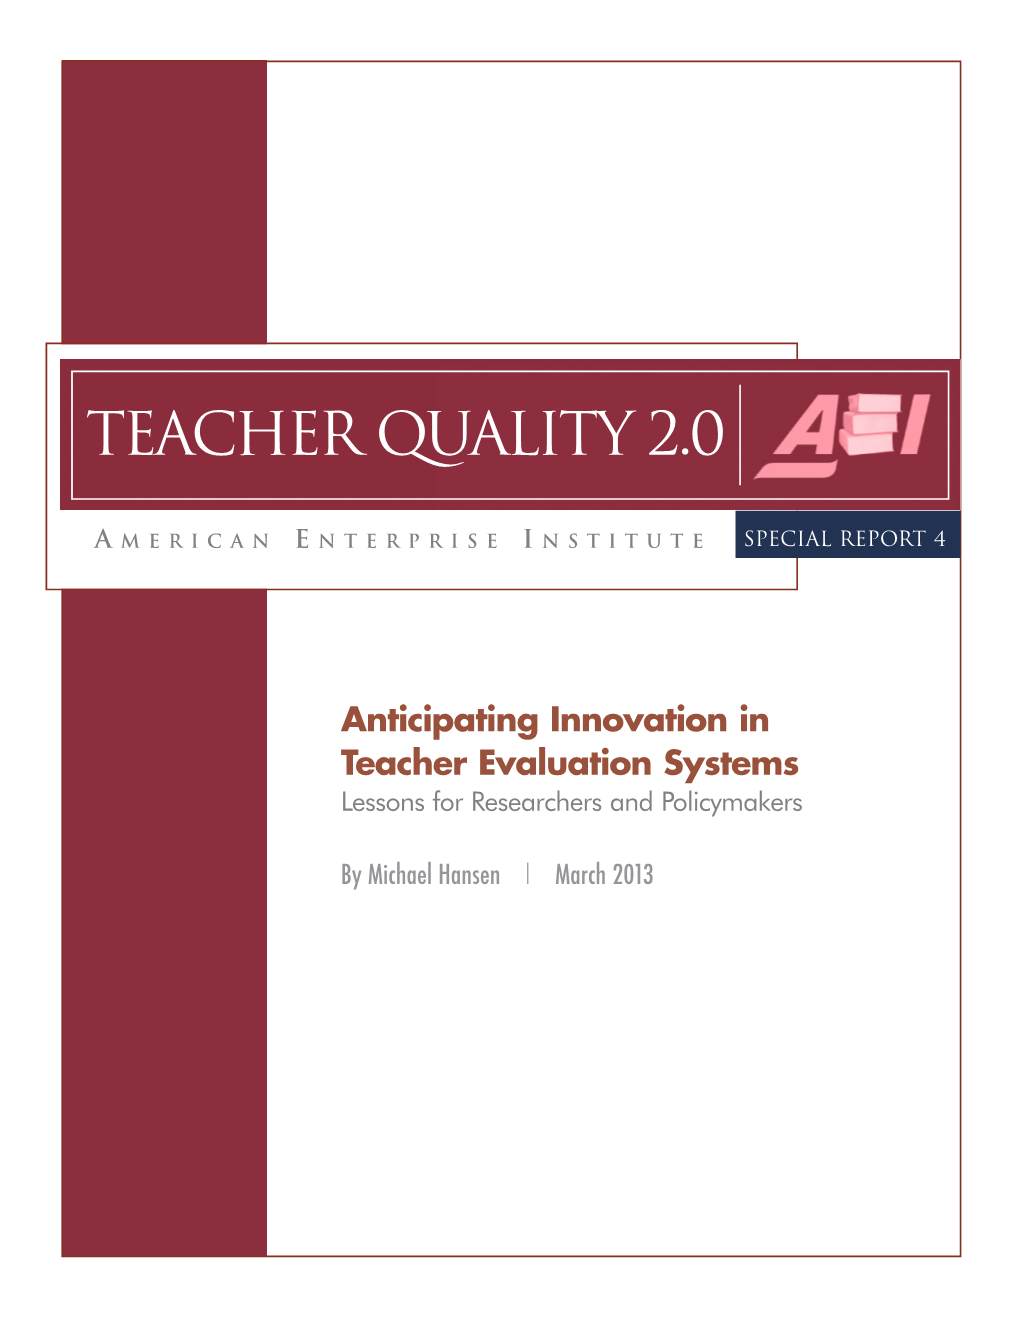 Teacher Quality 2.0